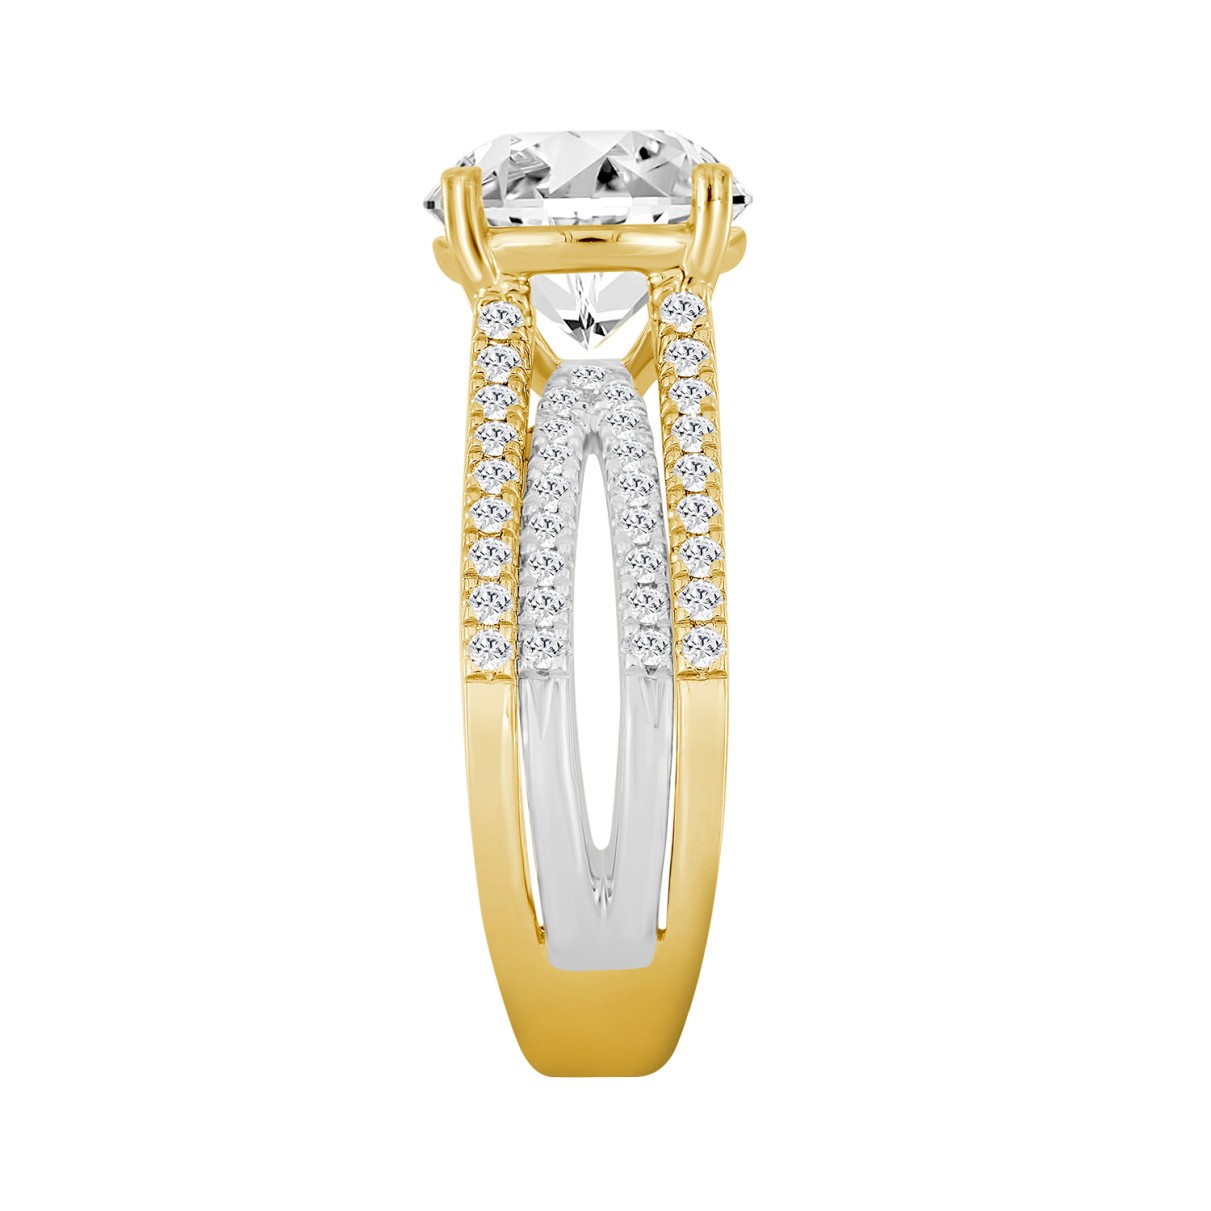 LADIES RING 3 5/8CT ROUND DIAMOND 14K WHITE/YELLOW GOLD (CENTER STONE ROUND DIAMOND 3CT )